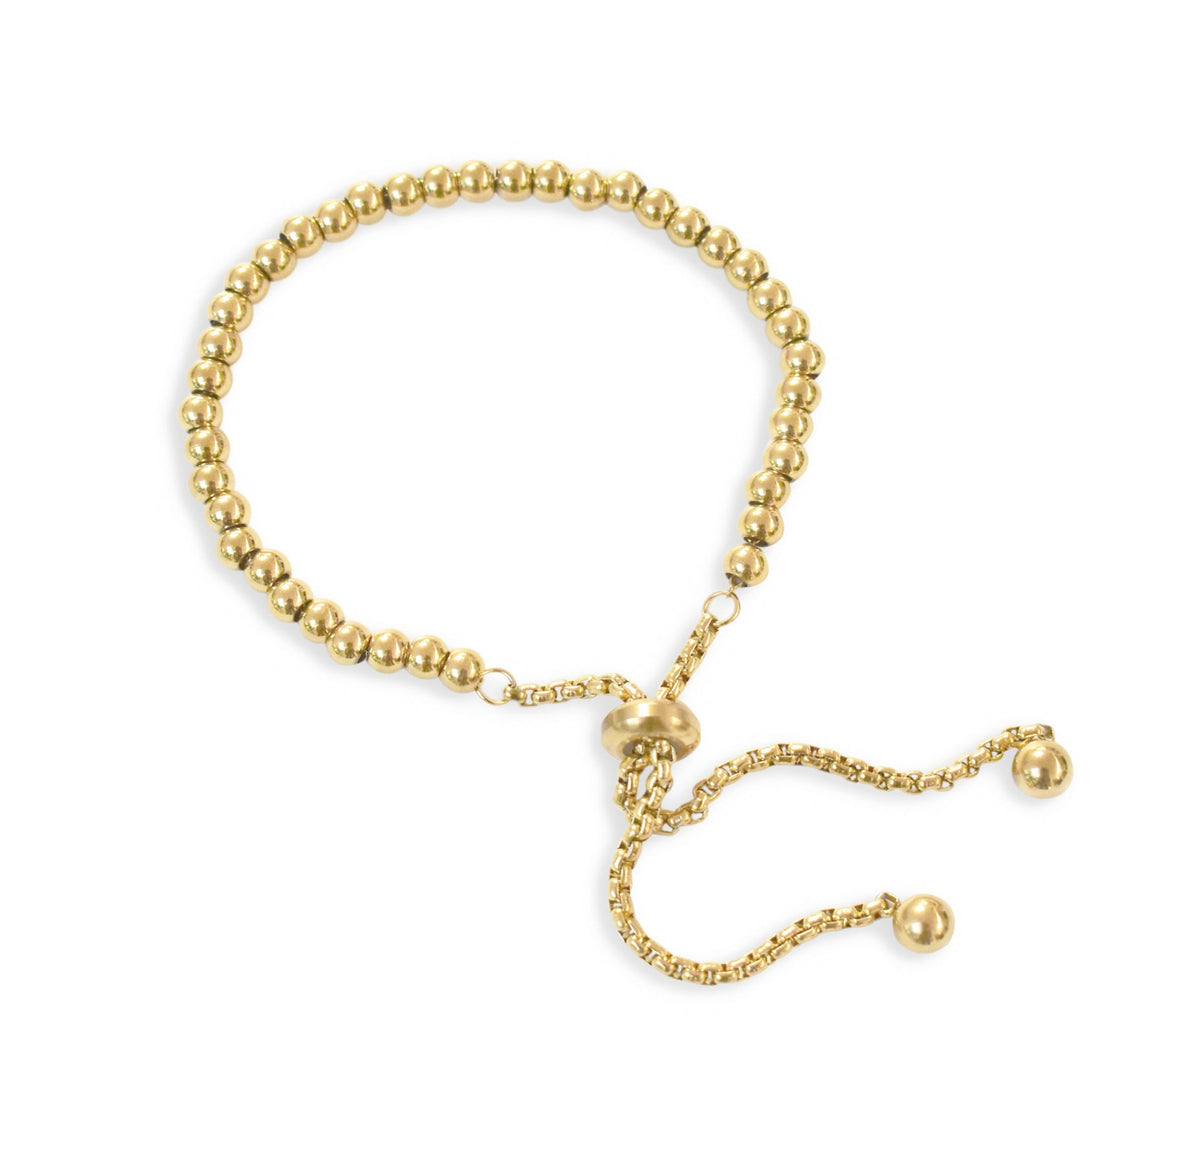 gold beaded ball bracelet waterproof jewelry